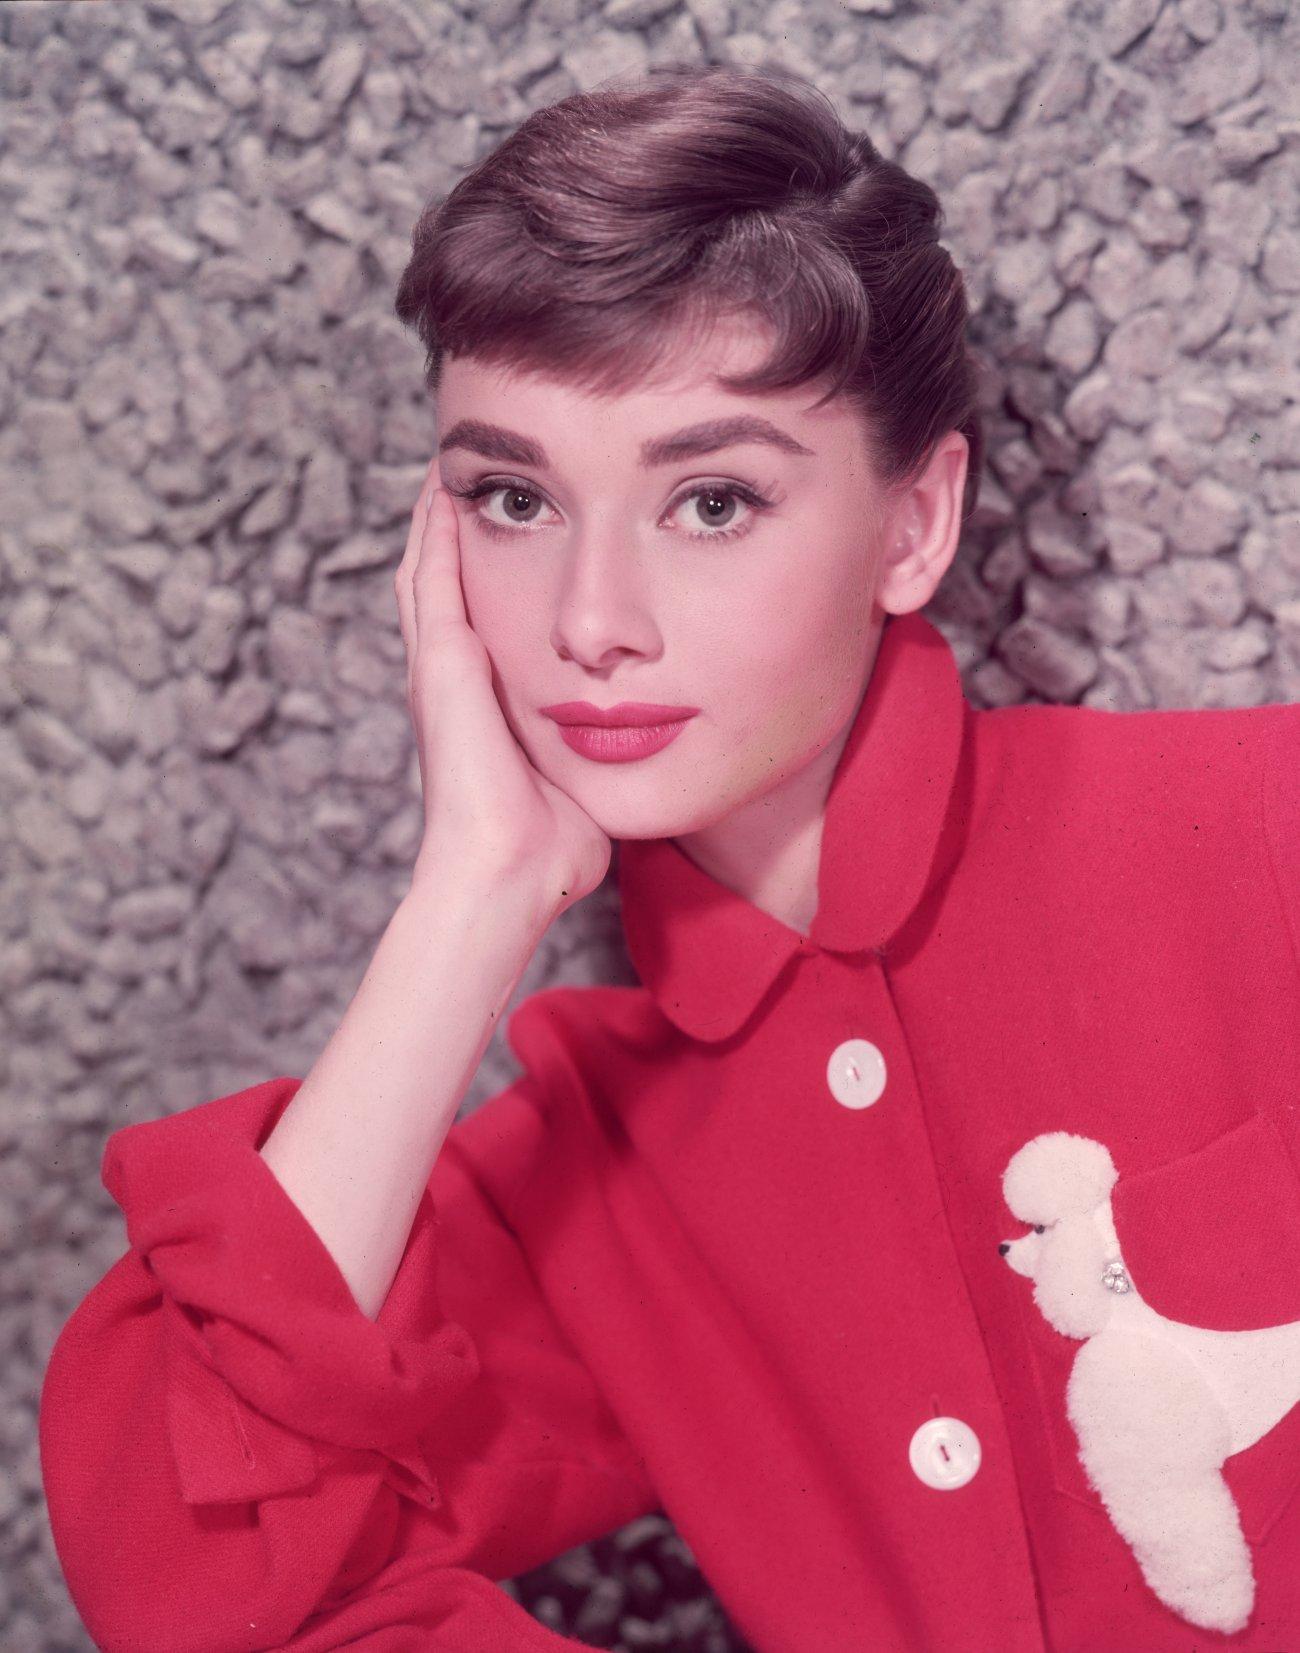 Audrey Hepburn wallpaper №10993.